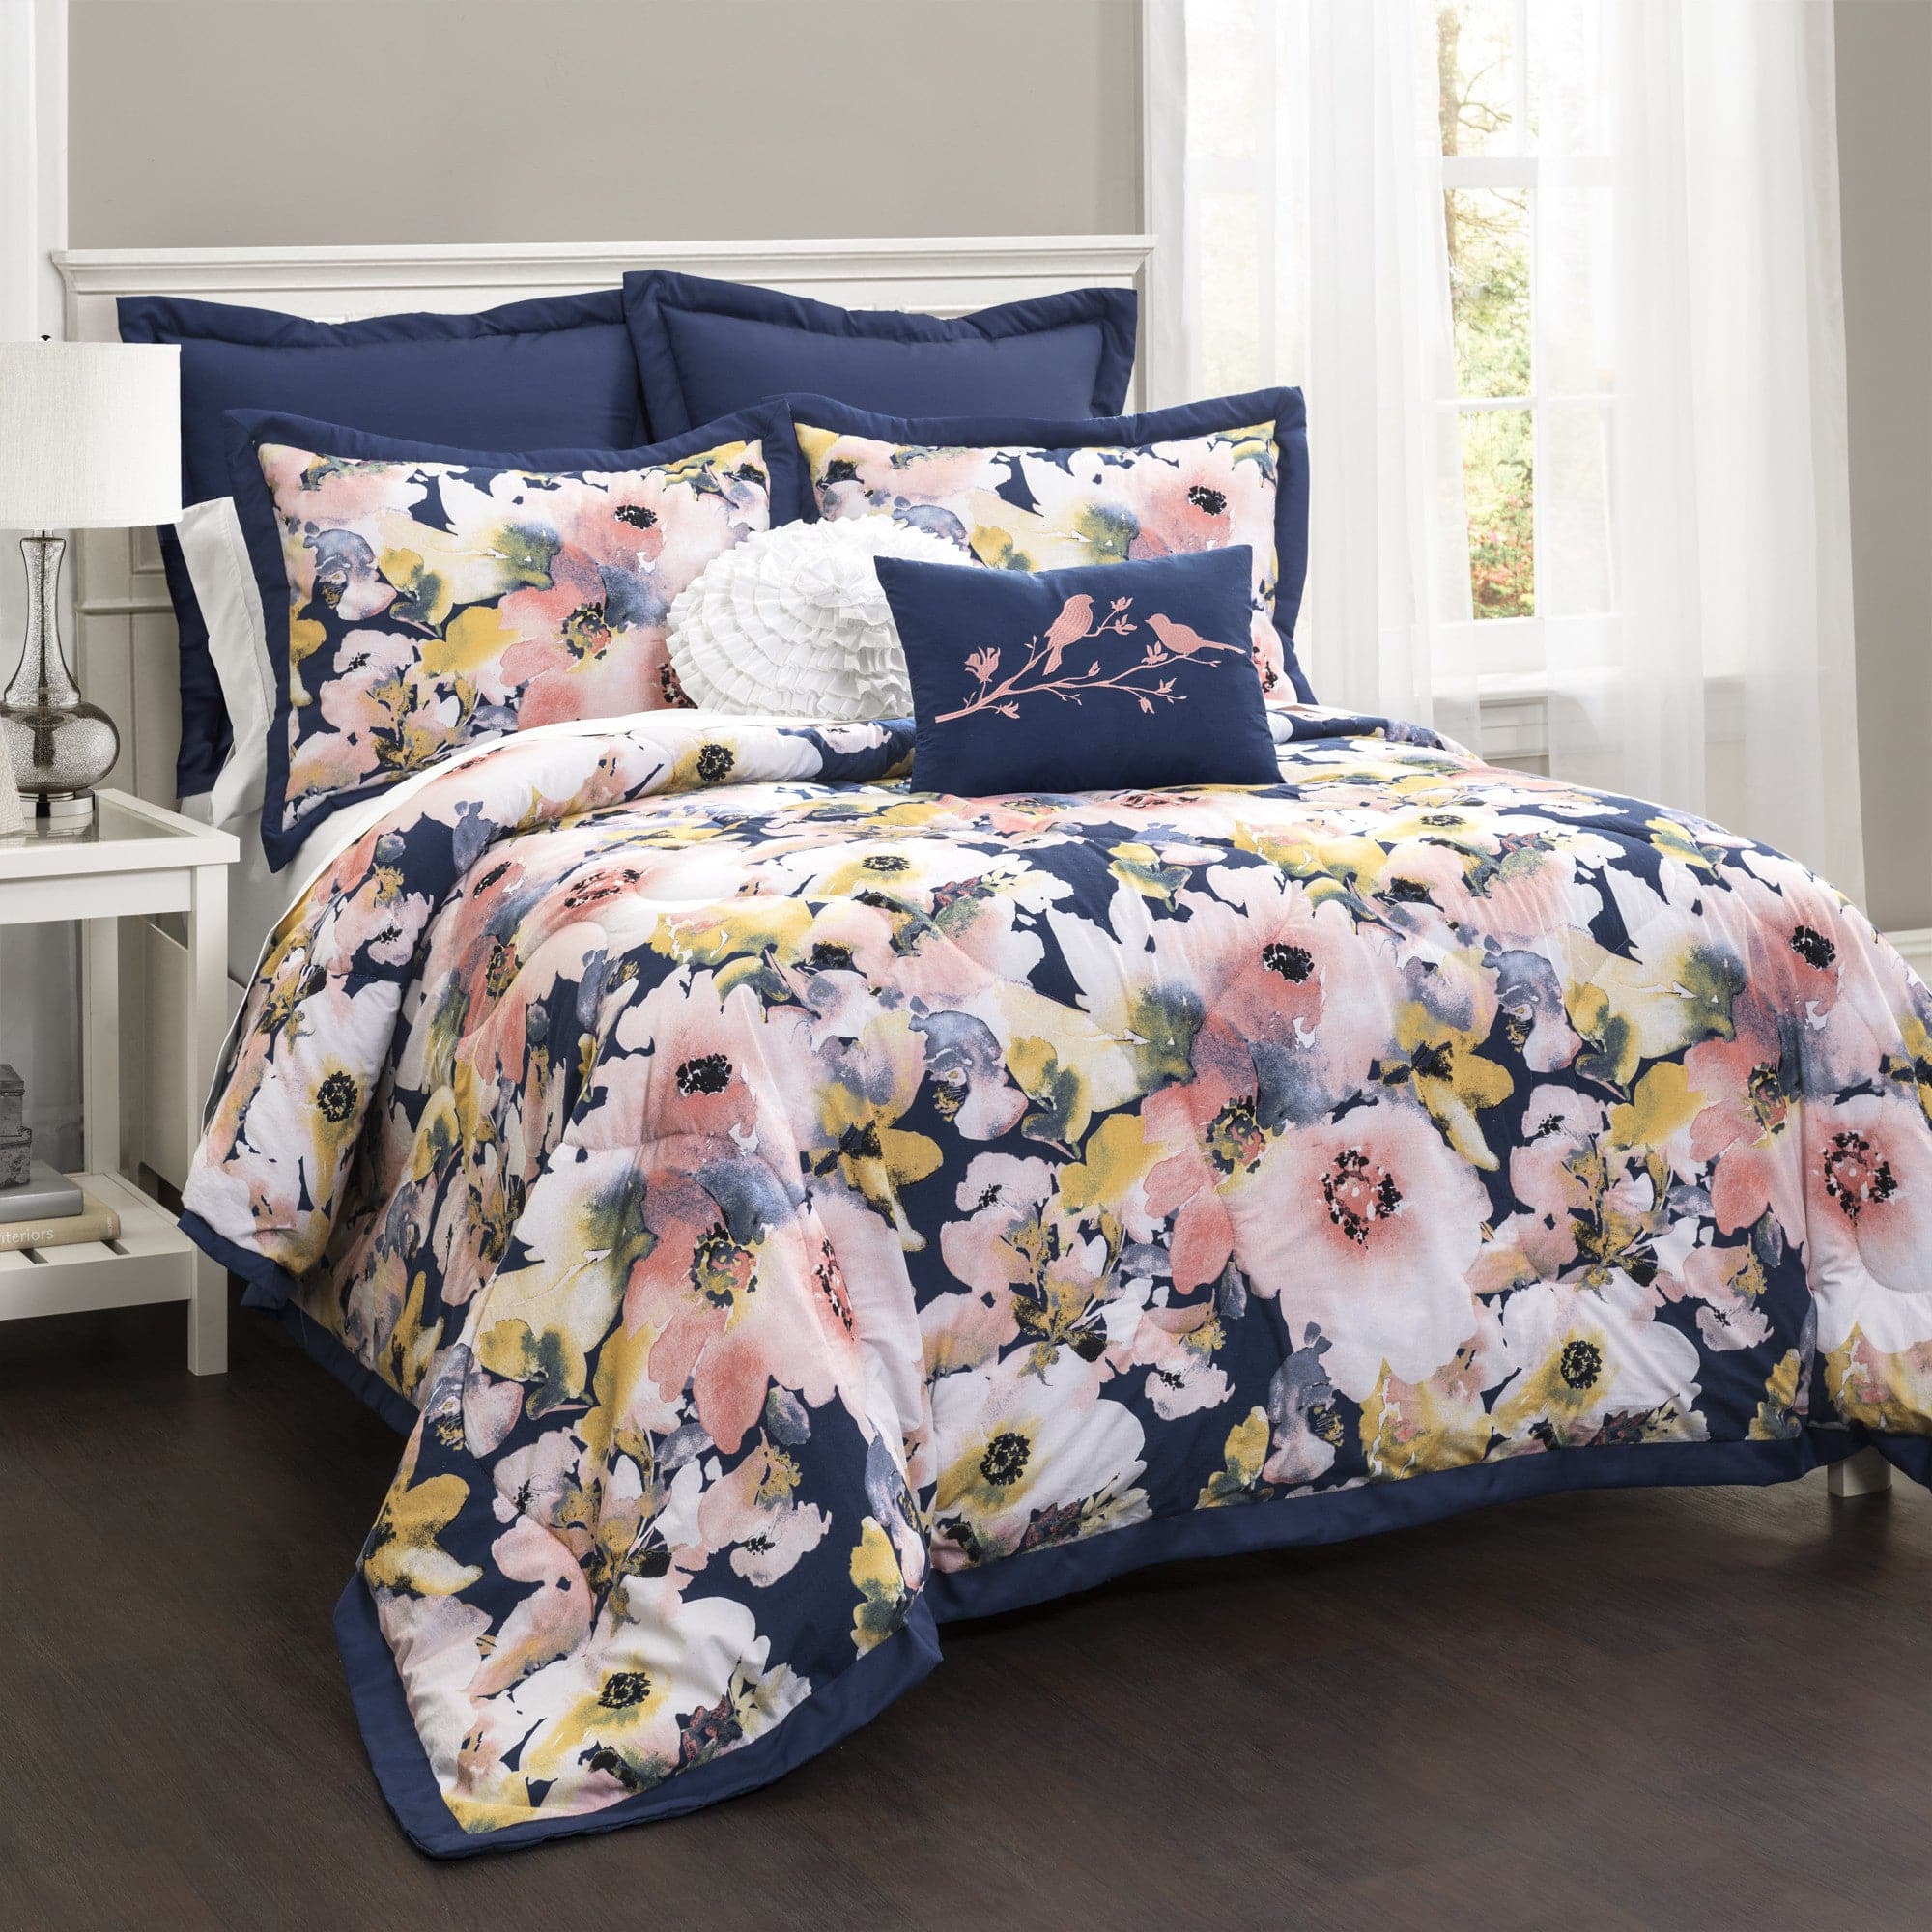 Floral Watercolor Comforter 7 Piece Set Lush Decor Www